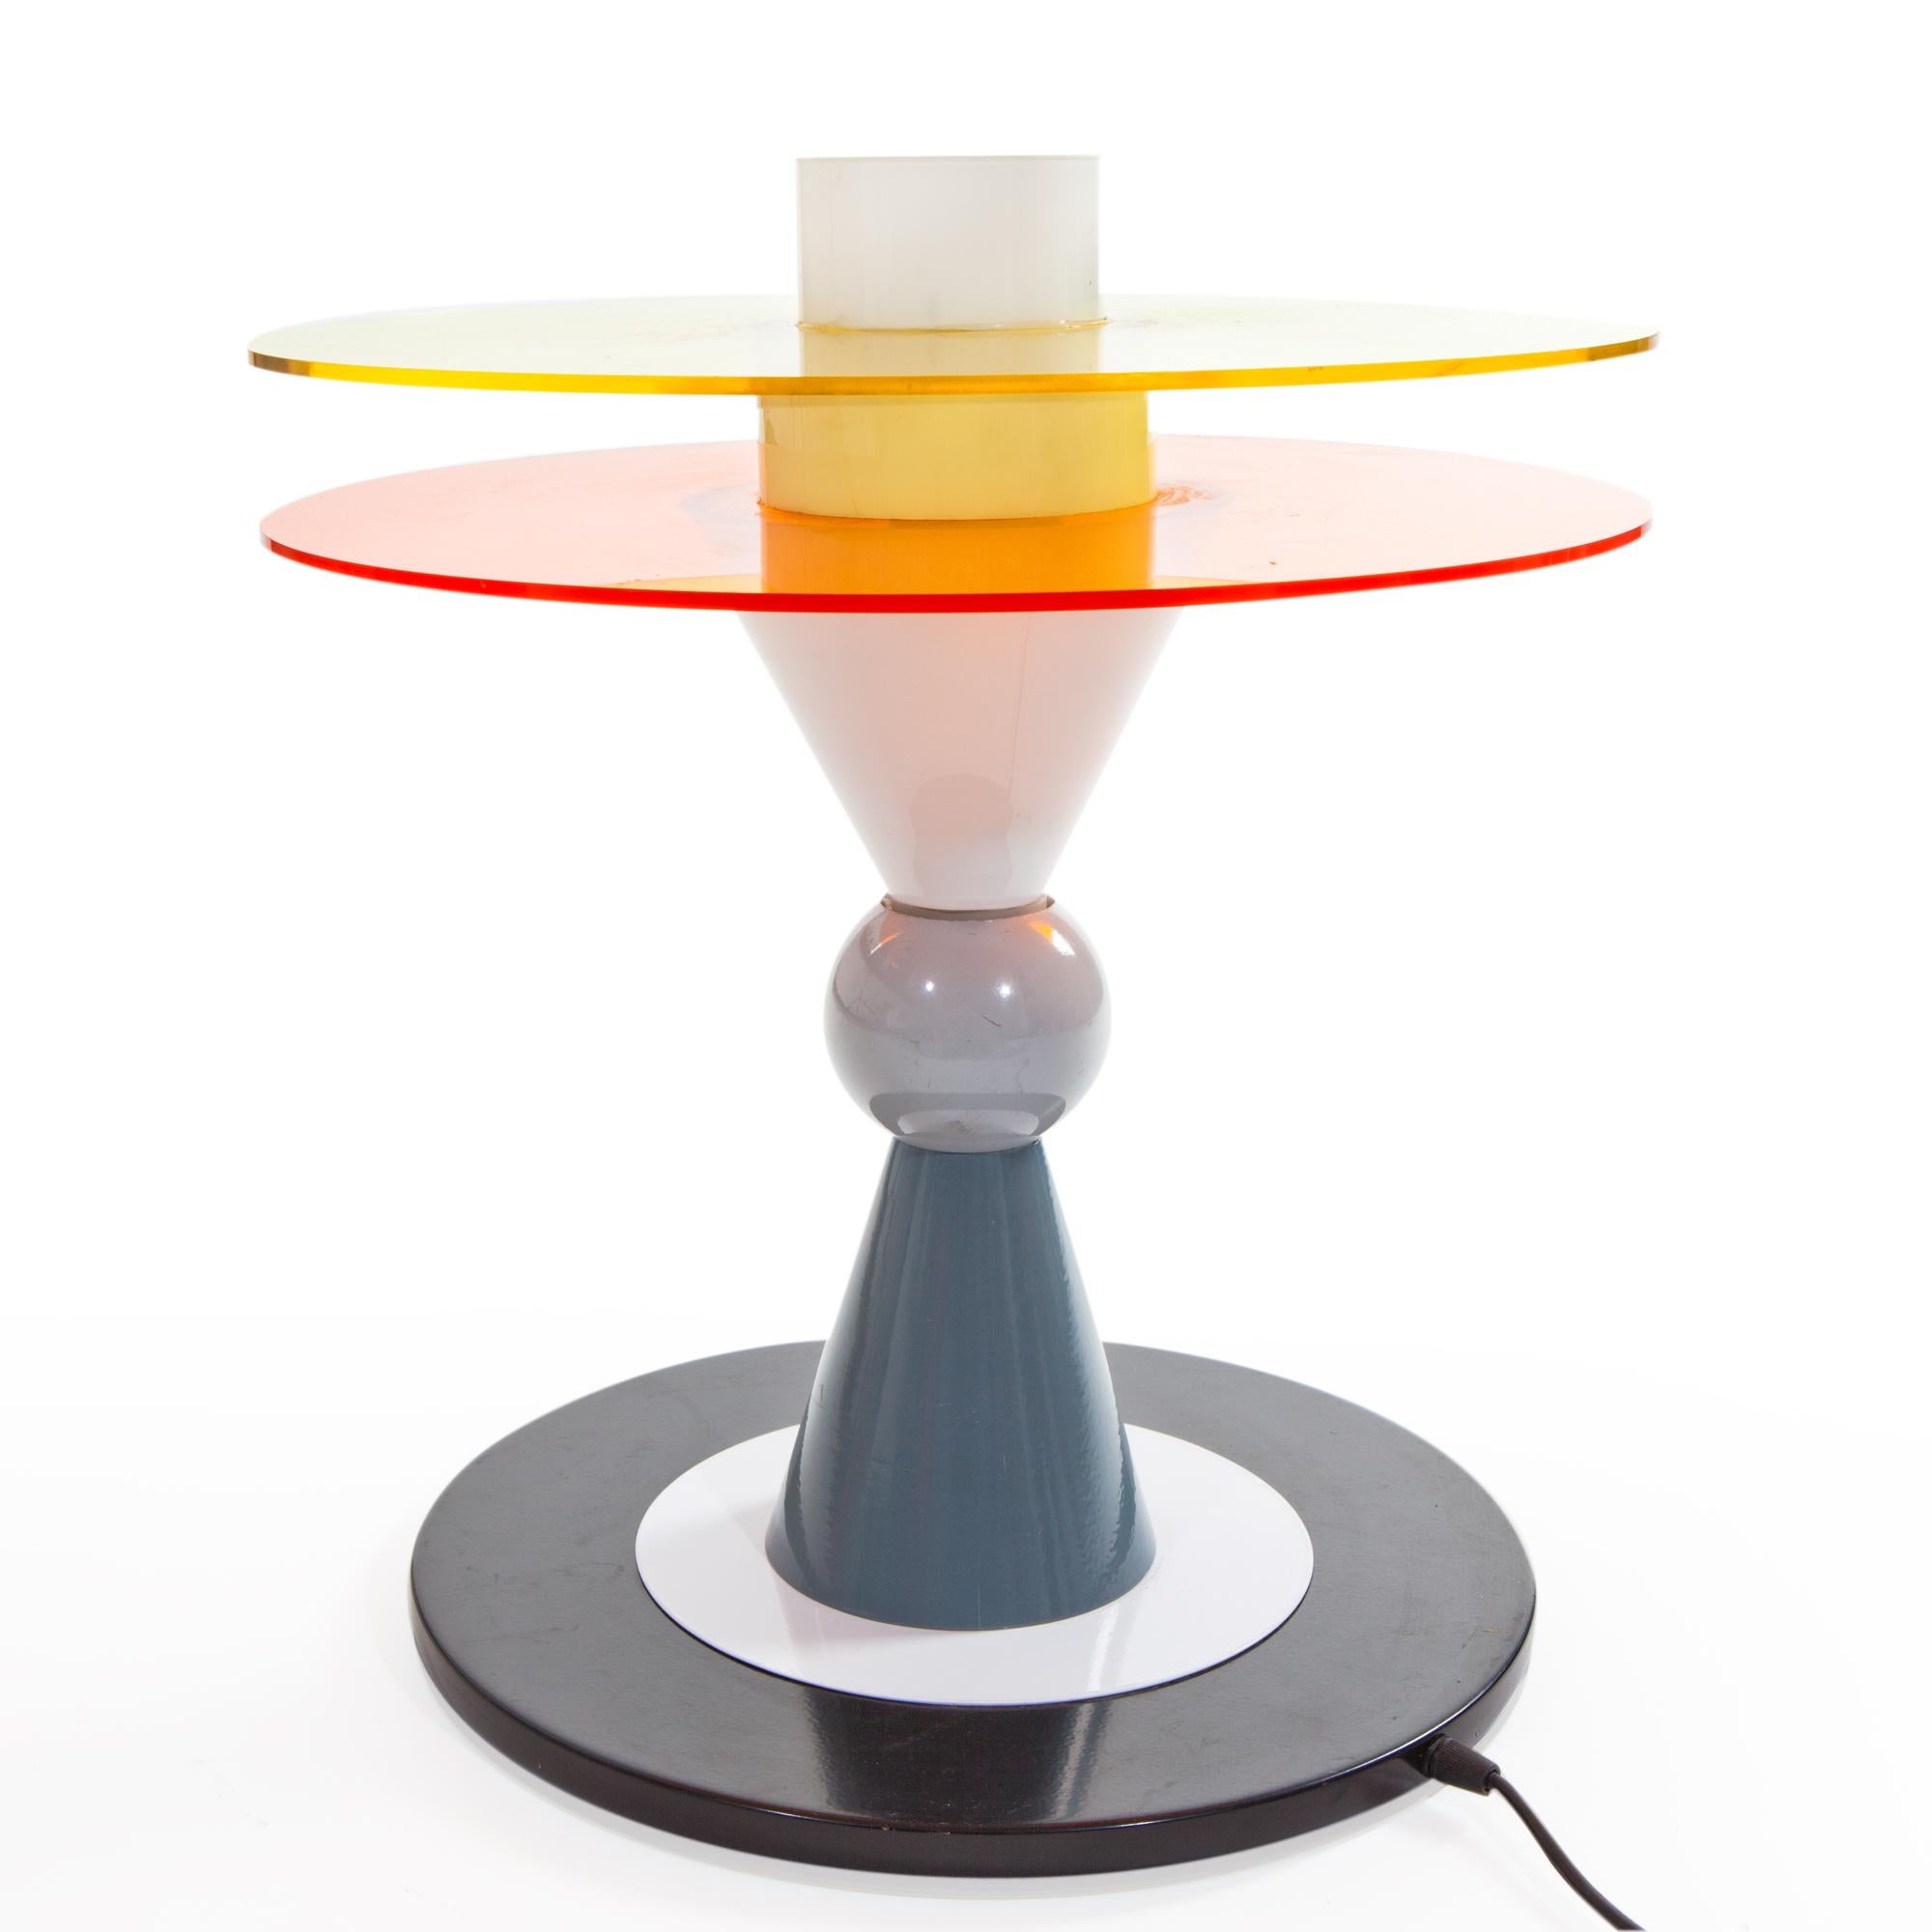 Hier sehen Sie die US-amerikanische verkabelte Bay Table Lamp aus Glas, Aluminium und Plexiglas, die 1983 von Ettore Sottsass für Memphis Milano entworfen wurde.

Ettore Sottsass wurde 1917 in Innsbruck geboren. Im Jahr 1939 schloss er sein